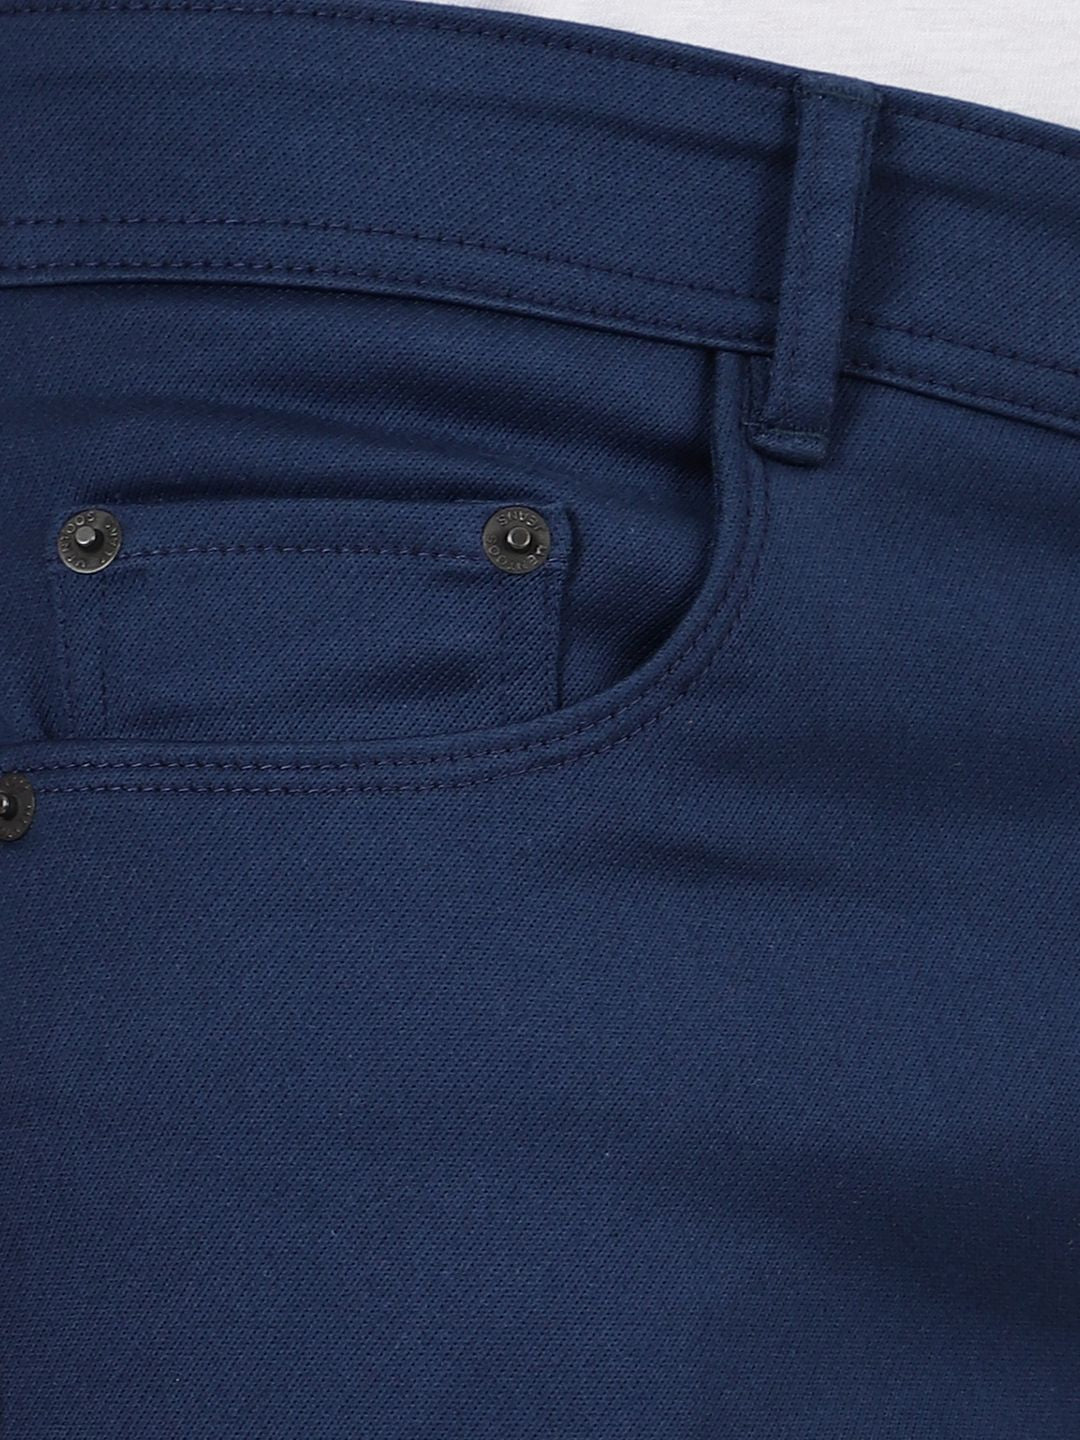 Slim fit flat front trouser___Blue